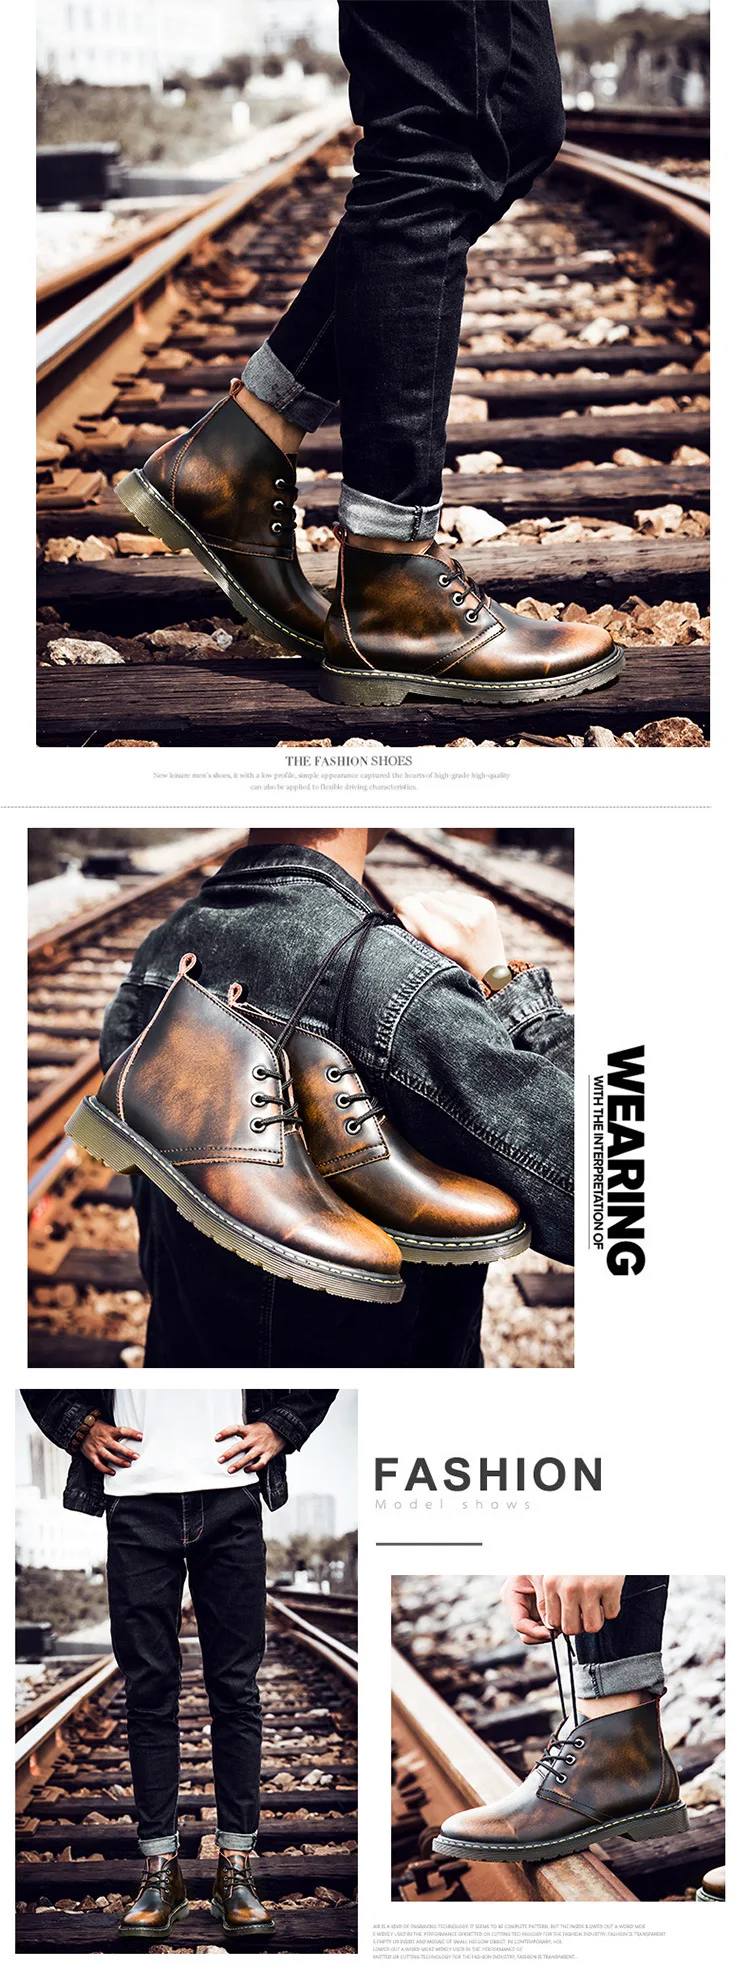 Мужские ботинки в британском стиле для отдыха Осенняя мужская черная кожаная обувь мужские повседневные ботильоны на шнуровке Botas hombre, размеры 39-44, 3001 м